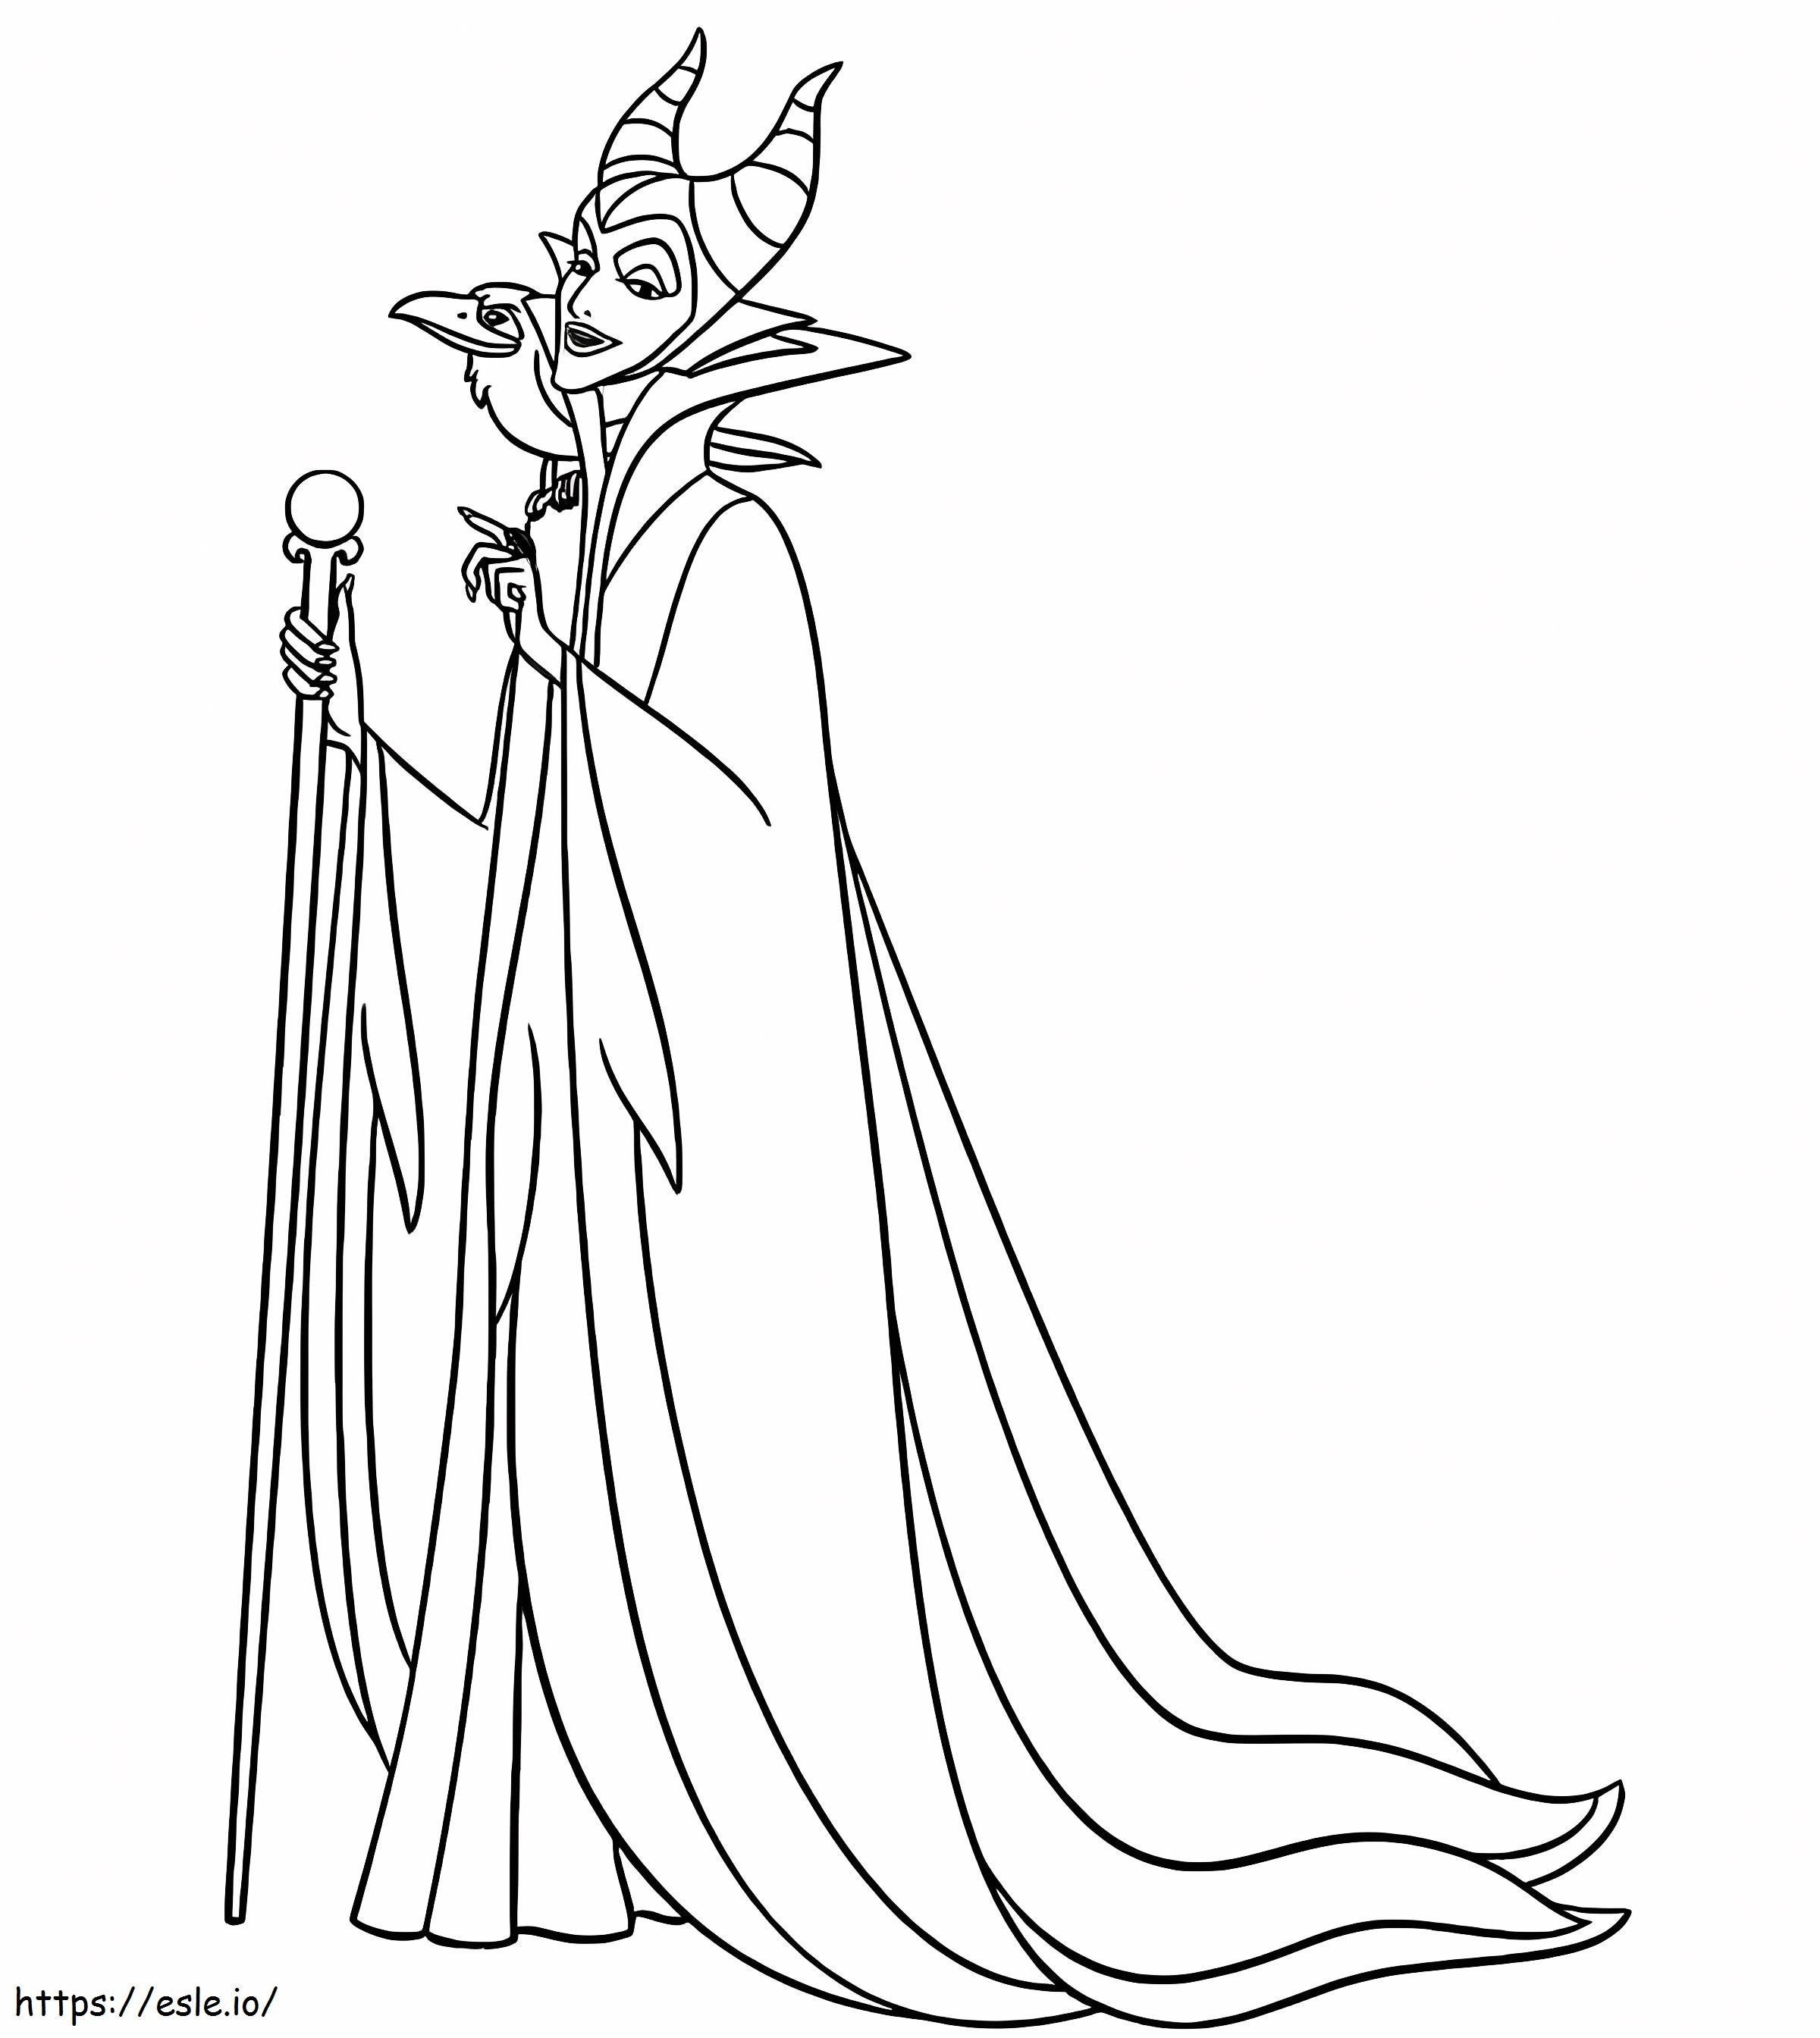 Evil Cartoon Maleficent kifestő